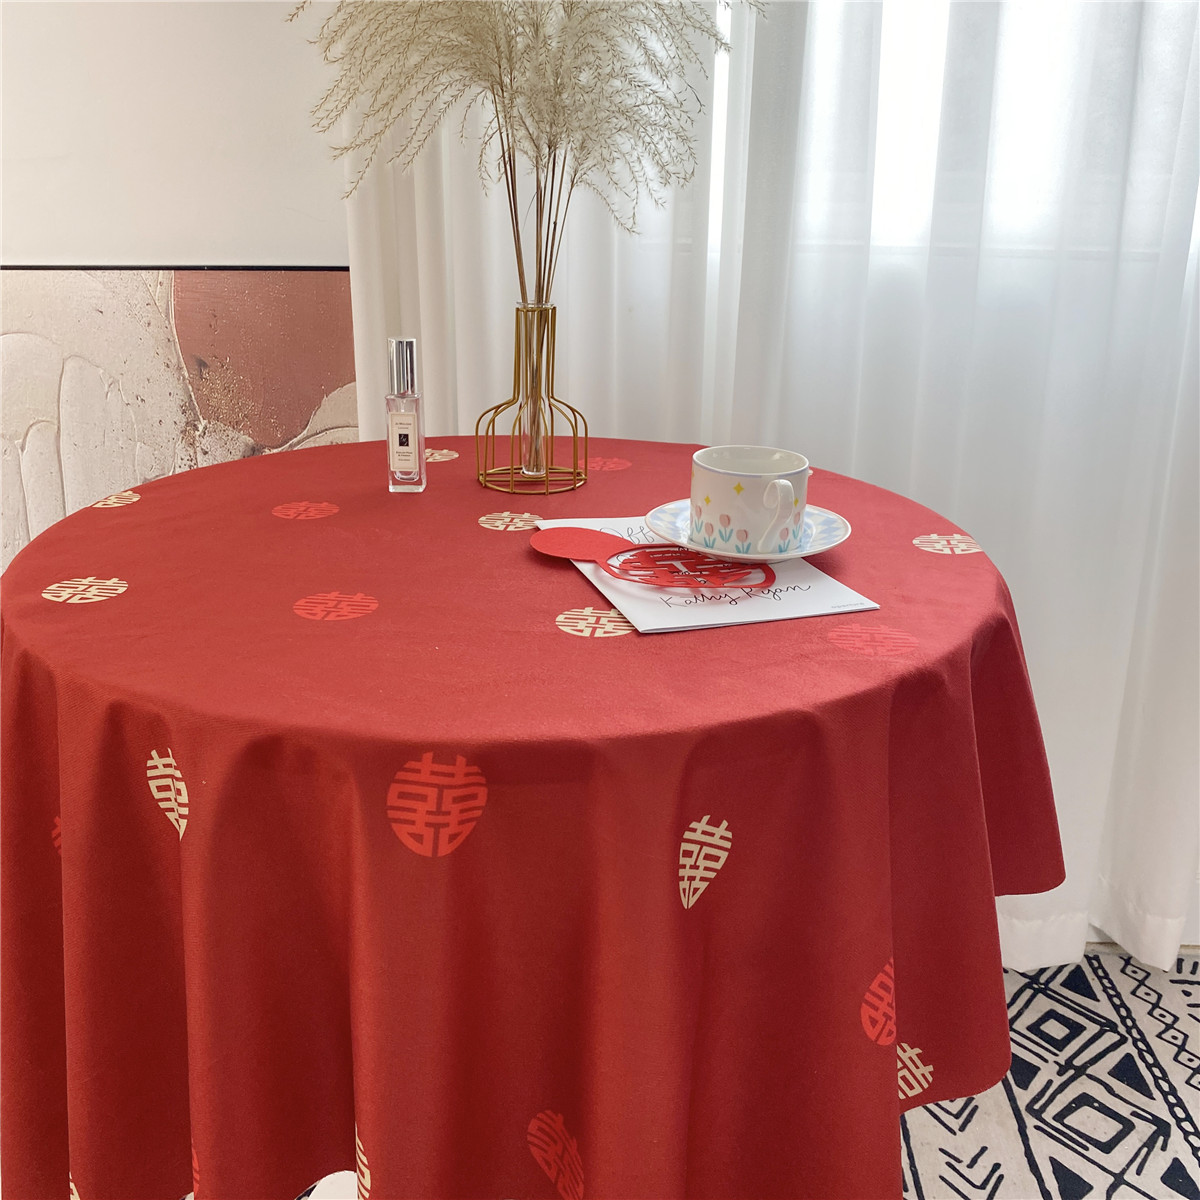 喜字桌布酒席餐桌茶几红色中式喜庆布置结婚房装饰长方形茶几婚房